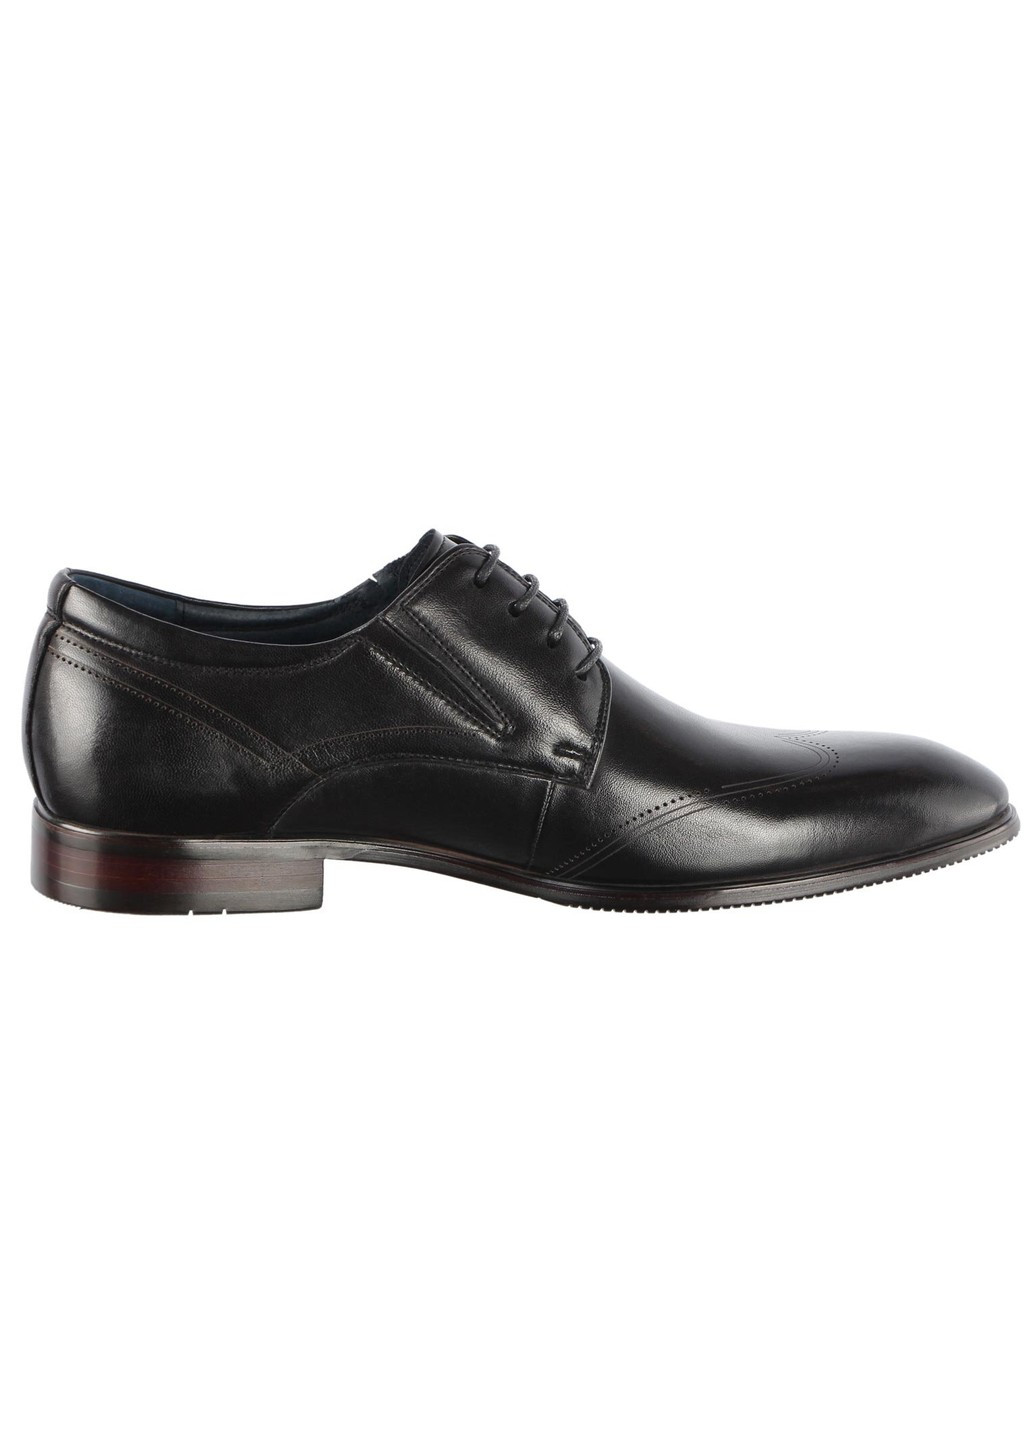 Черные мужские классические туфли 19897 Buts на шнурках